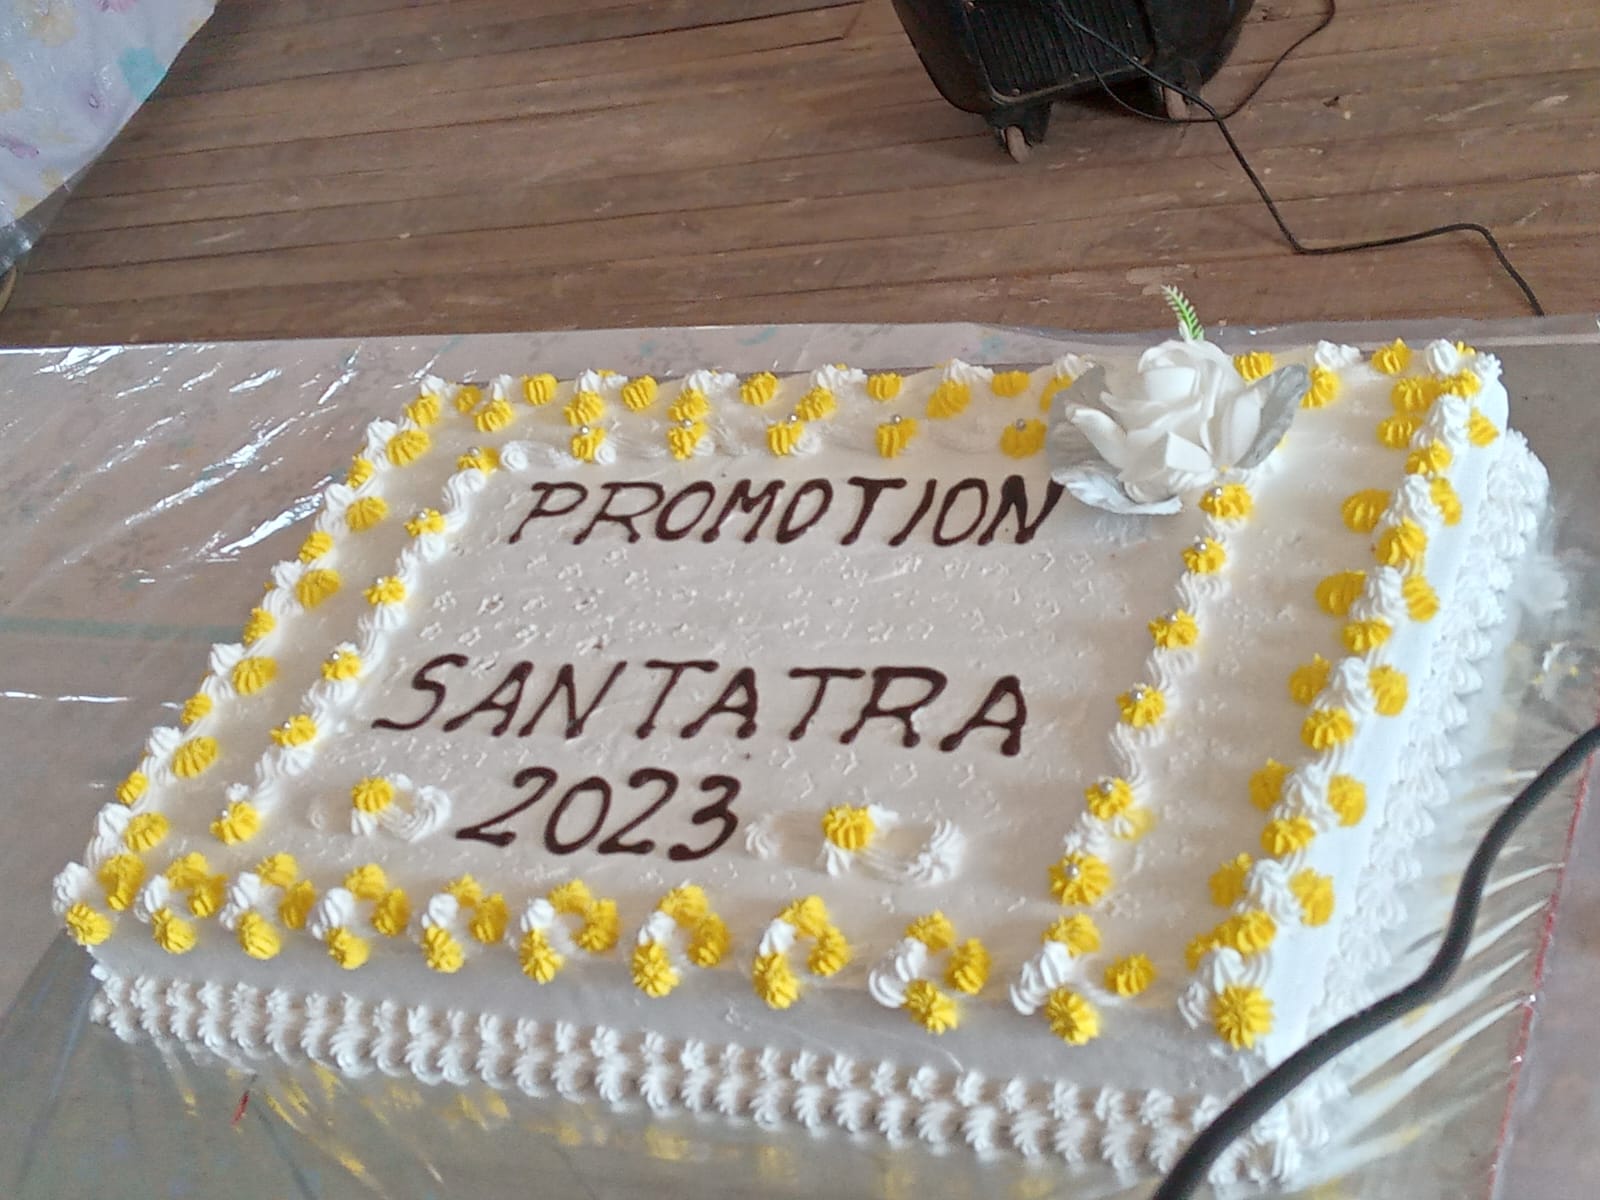 le gateau de la promotion Santatra